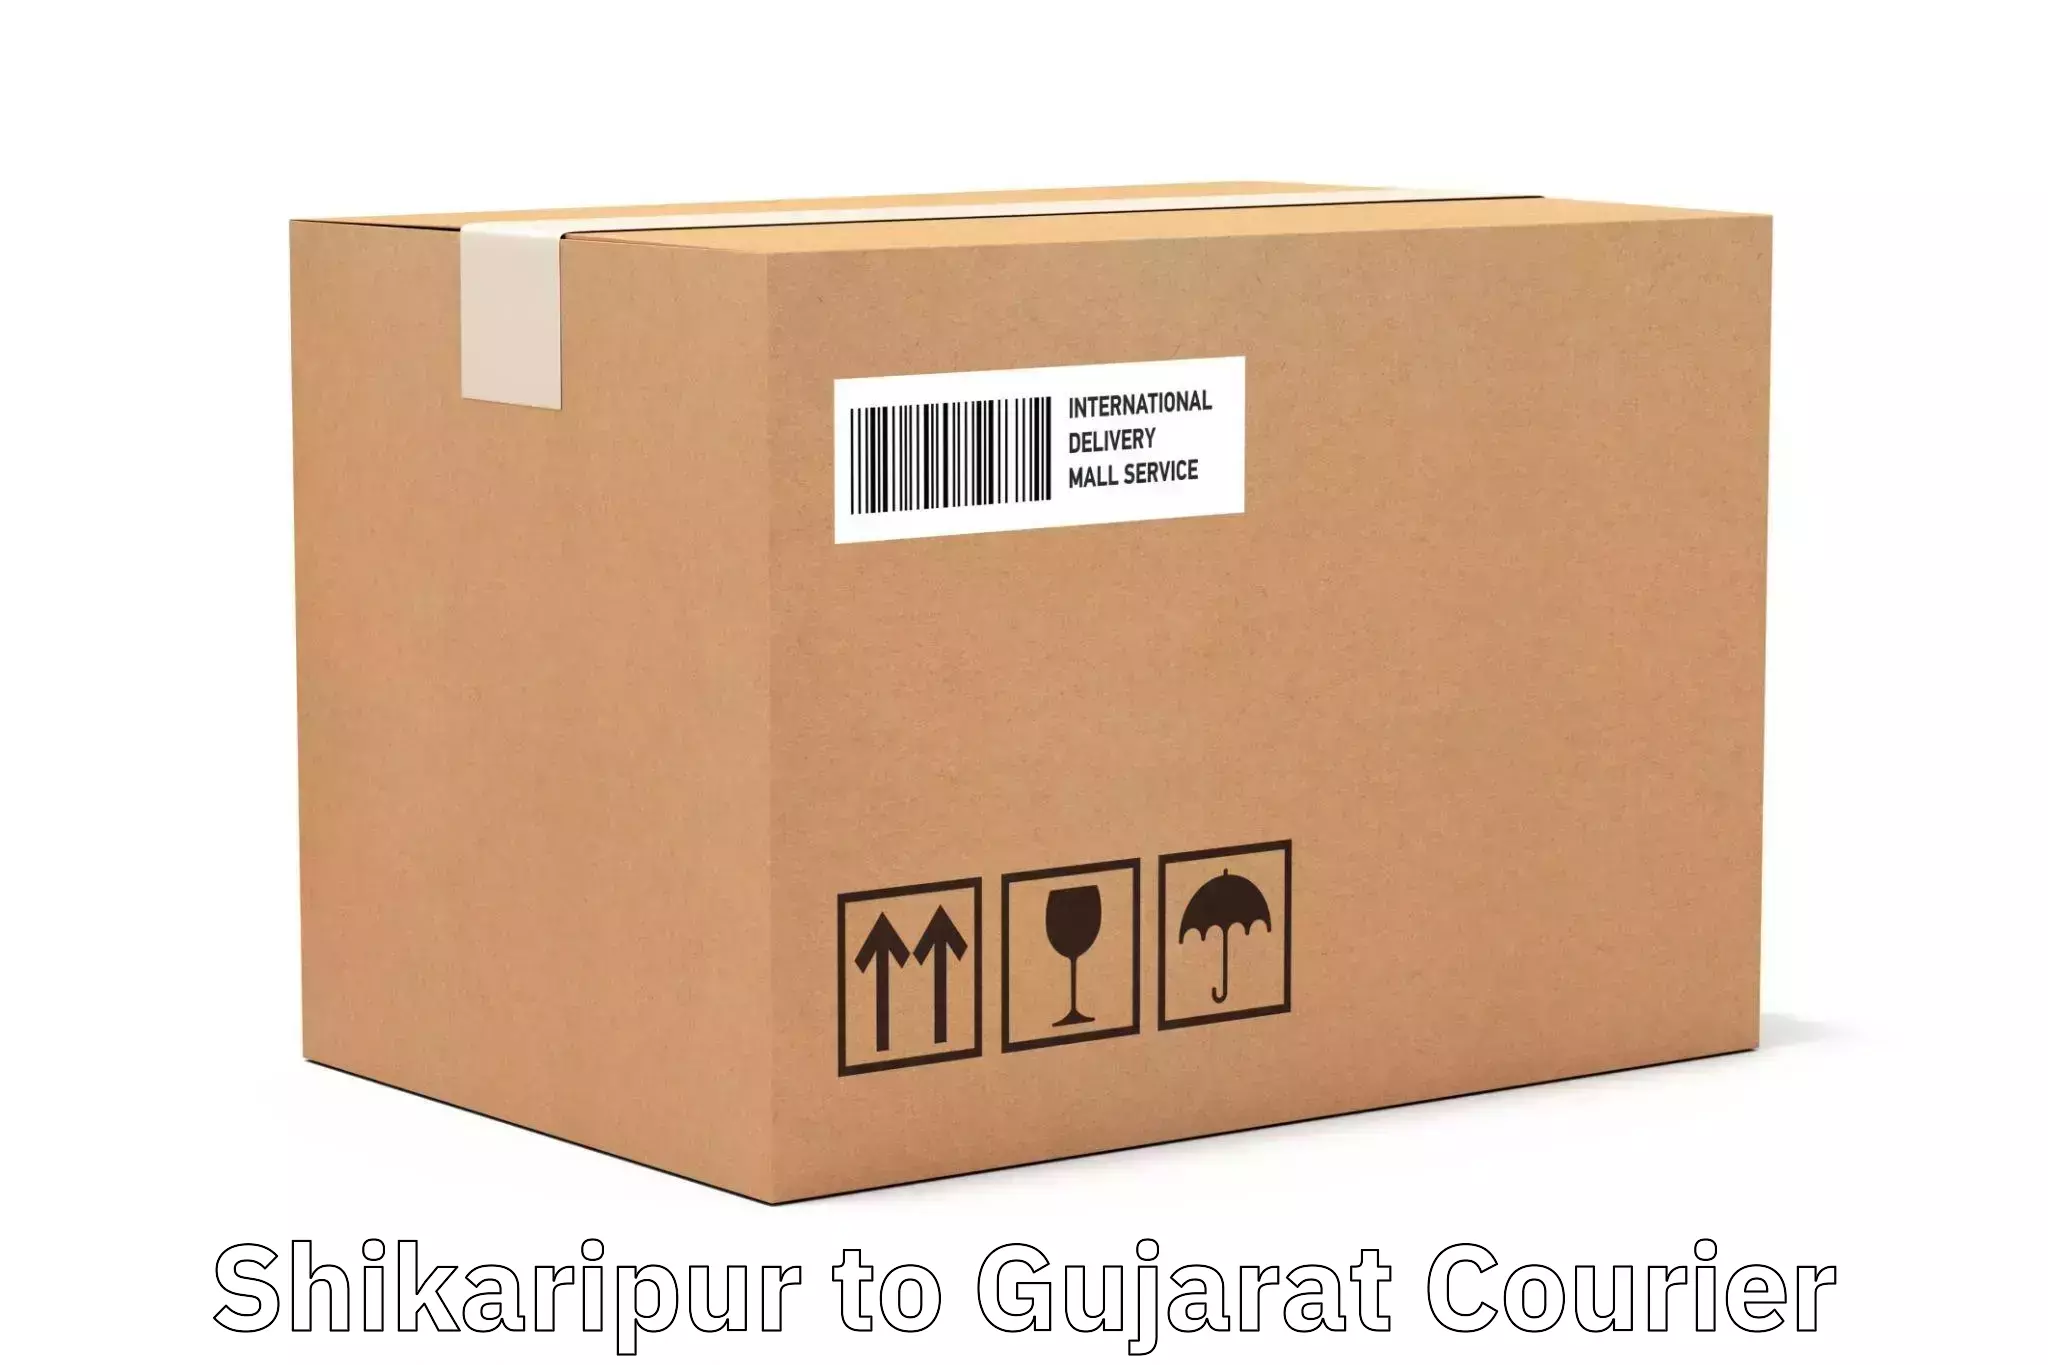 High-priority parcel service Shikaripur to Dhoraji